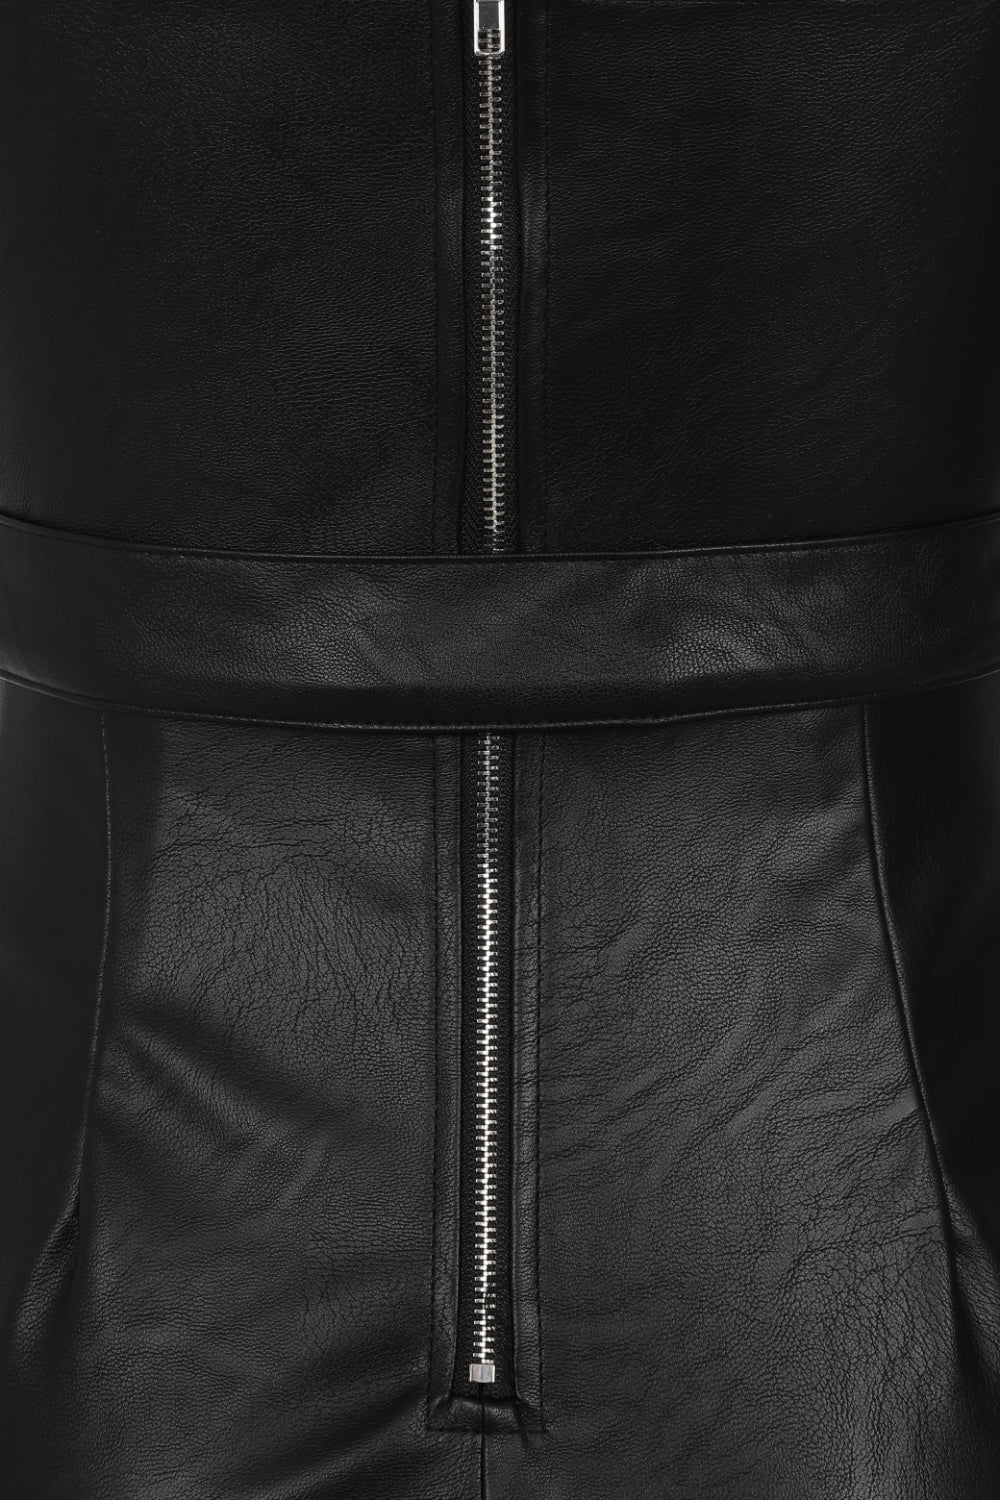 High Standards Black Leather Belted Split Maxi Dress